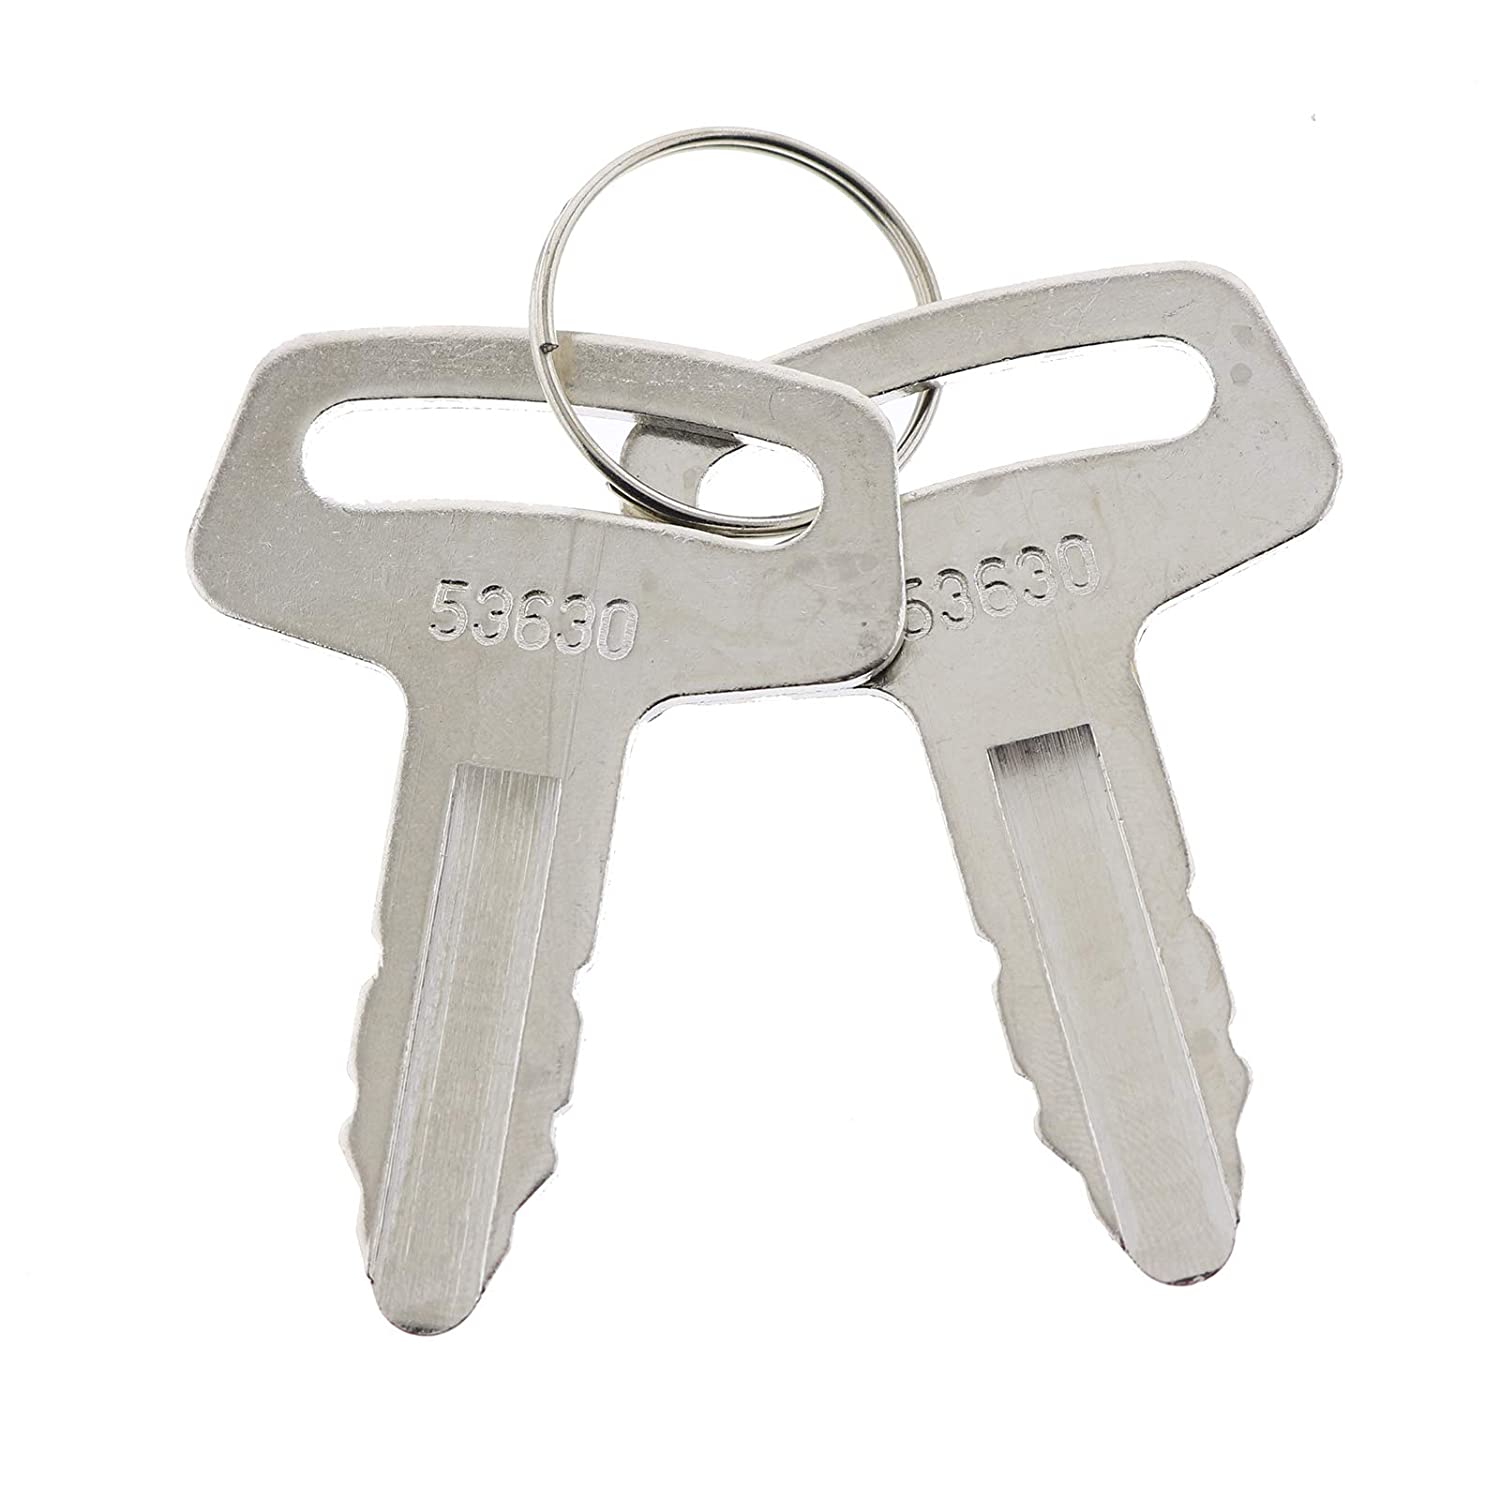 6X Ignition Keys with Key Chain RC101-53630 for Kubota K008 K008-3 KX91-2 KX101 KX121-2 KX151 KX161-2 KX41H R310 R400B R410 R420 R510 R520 KH101 KH151 KH170 KH35H KH41 KH51 - KUDUPARTS